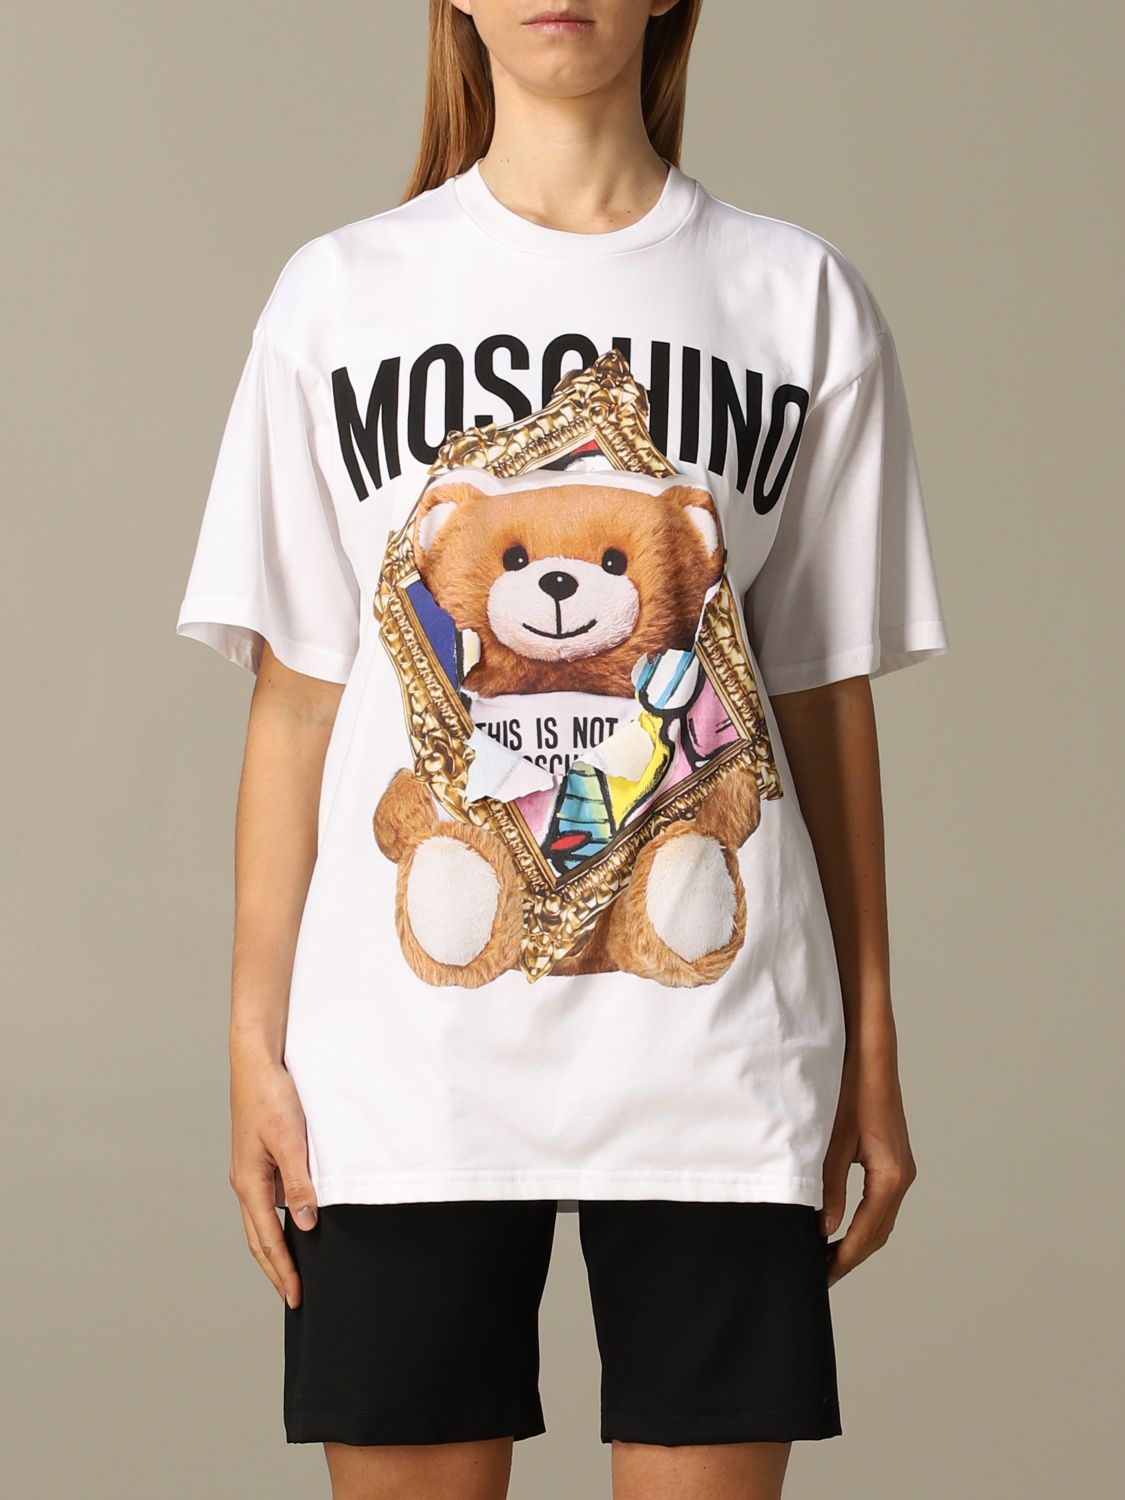 moschino t-shirt uk